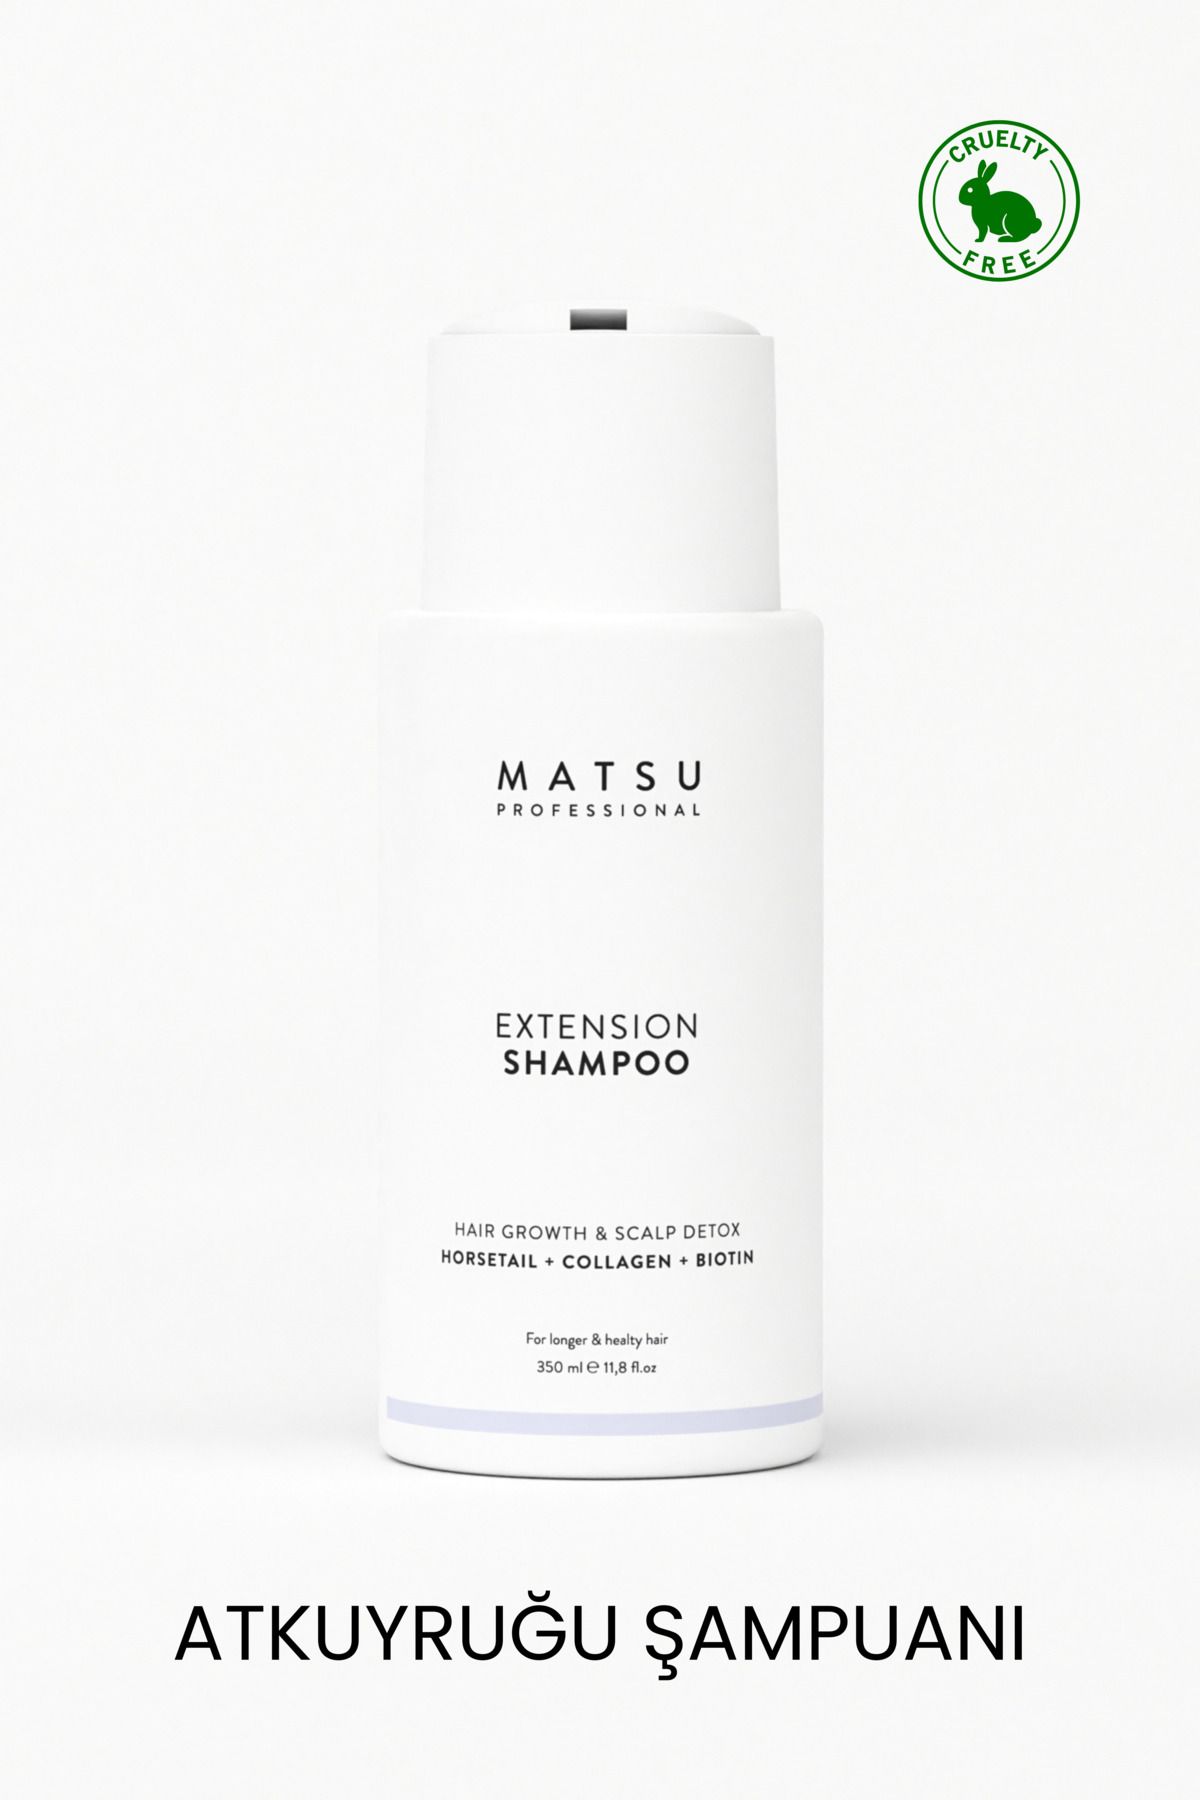 MATSU Extension Hızlı Saç Uzatmaya Yardımcı At Kuyruğu Şampuanı 350ml